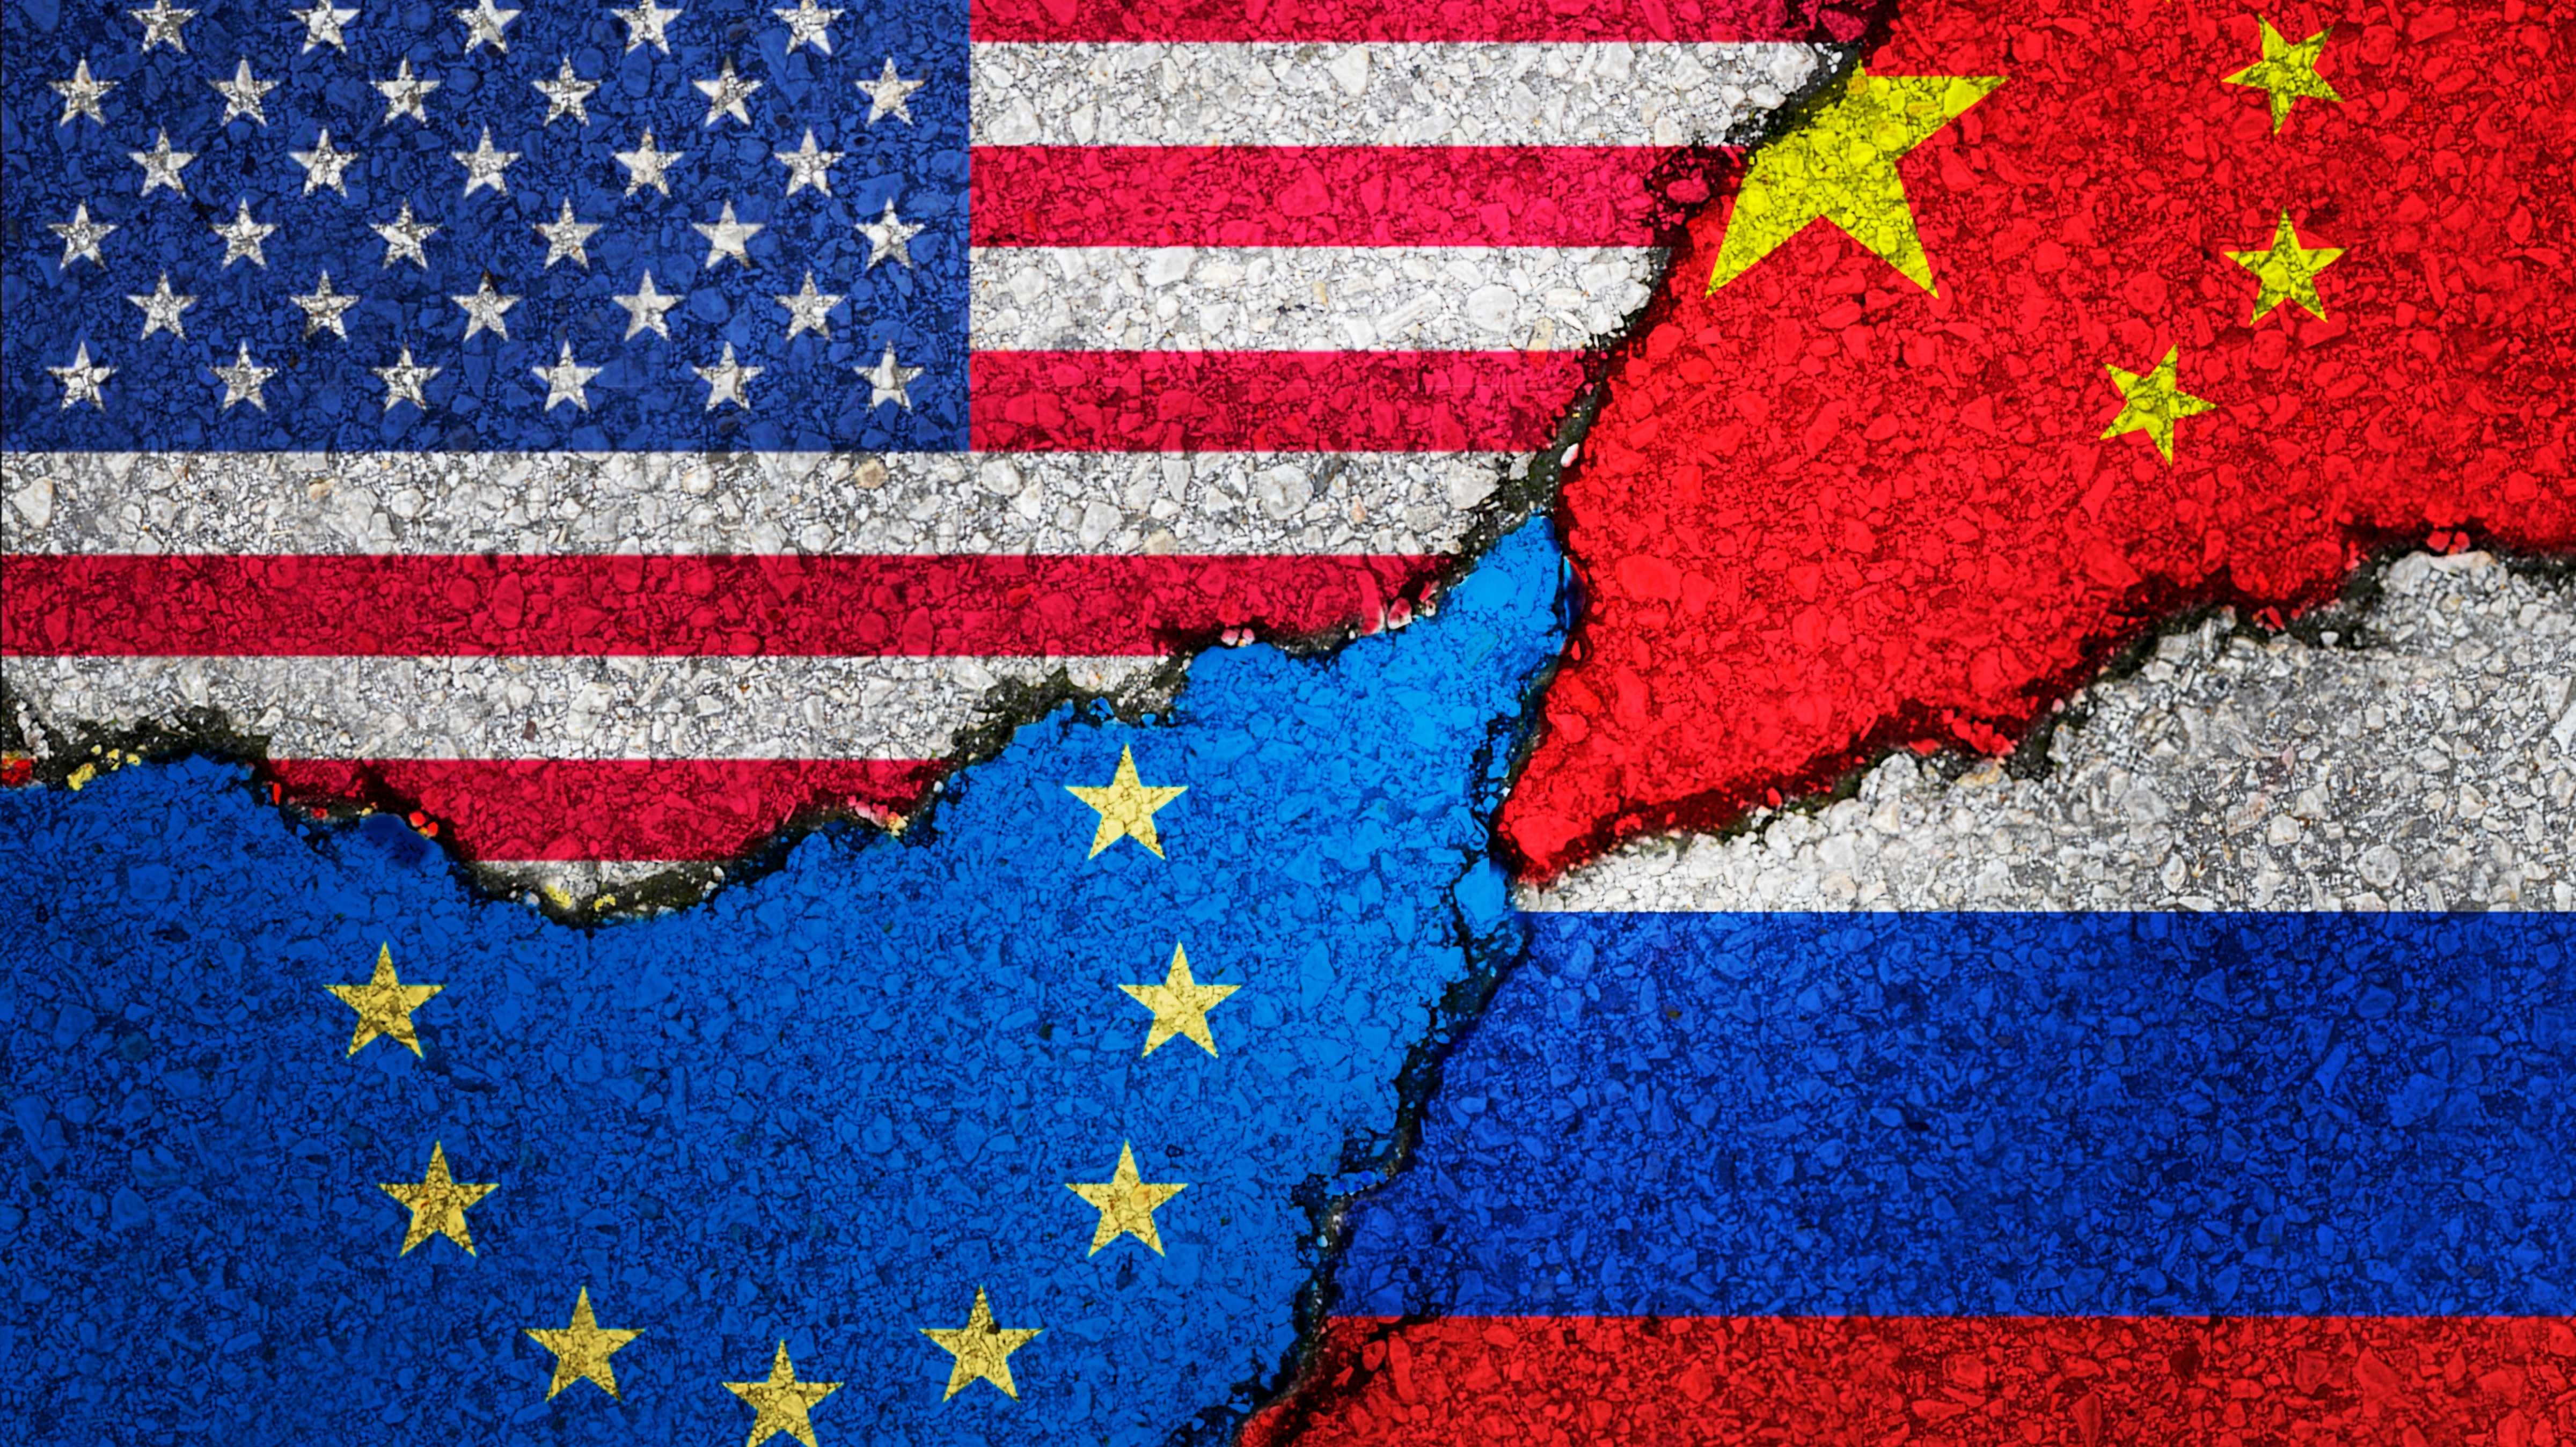 Fahnen von USA, EU, China und Russland sind an eine Wand gesprüht